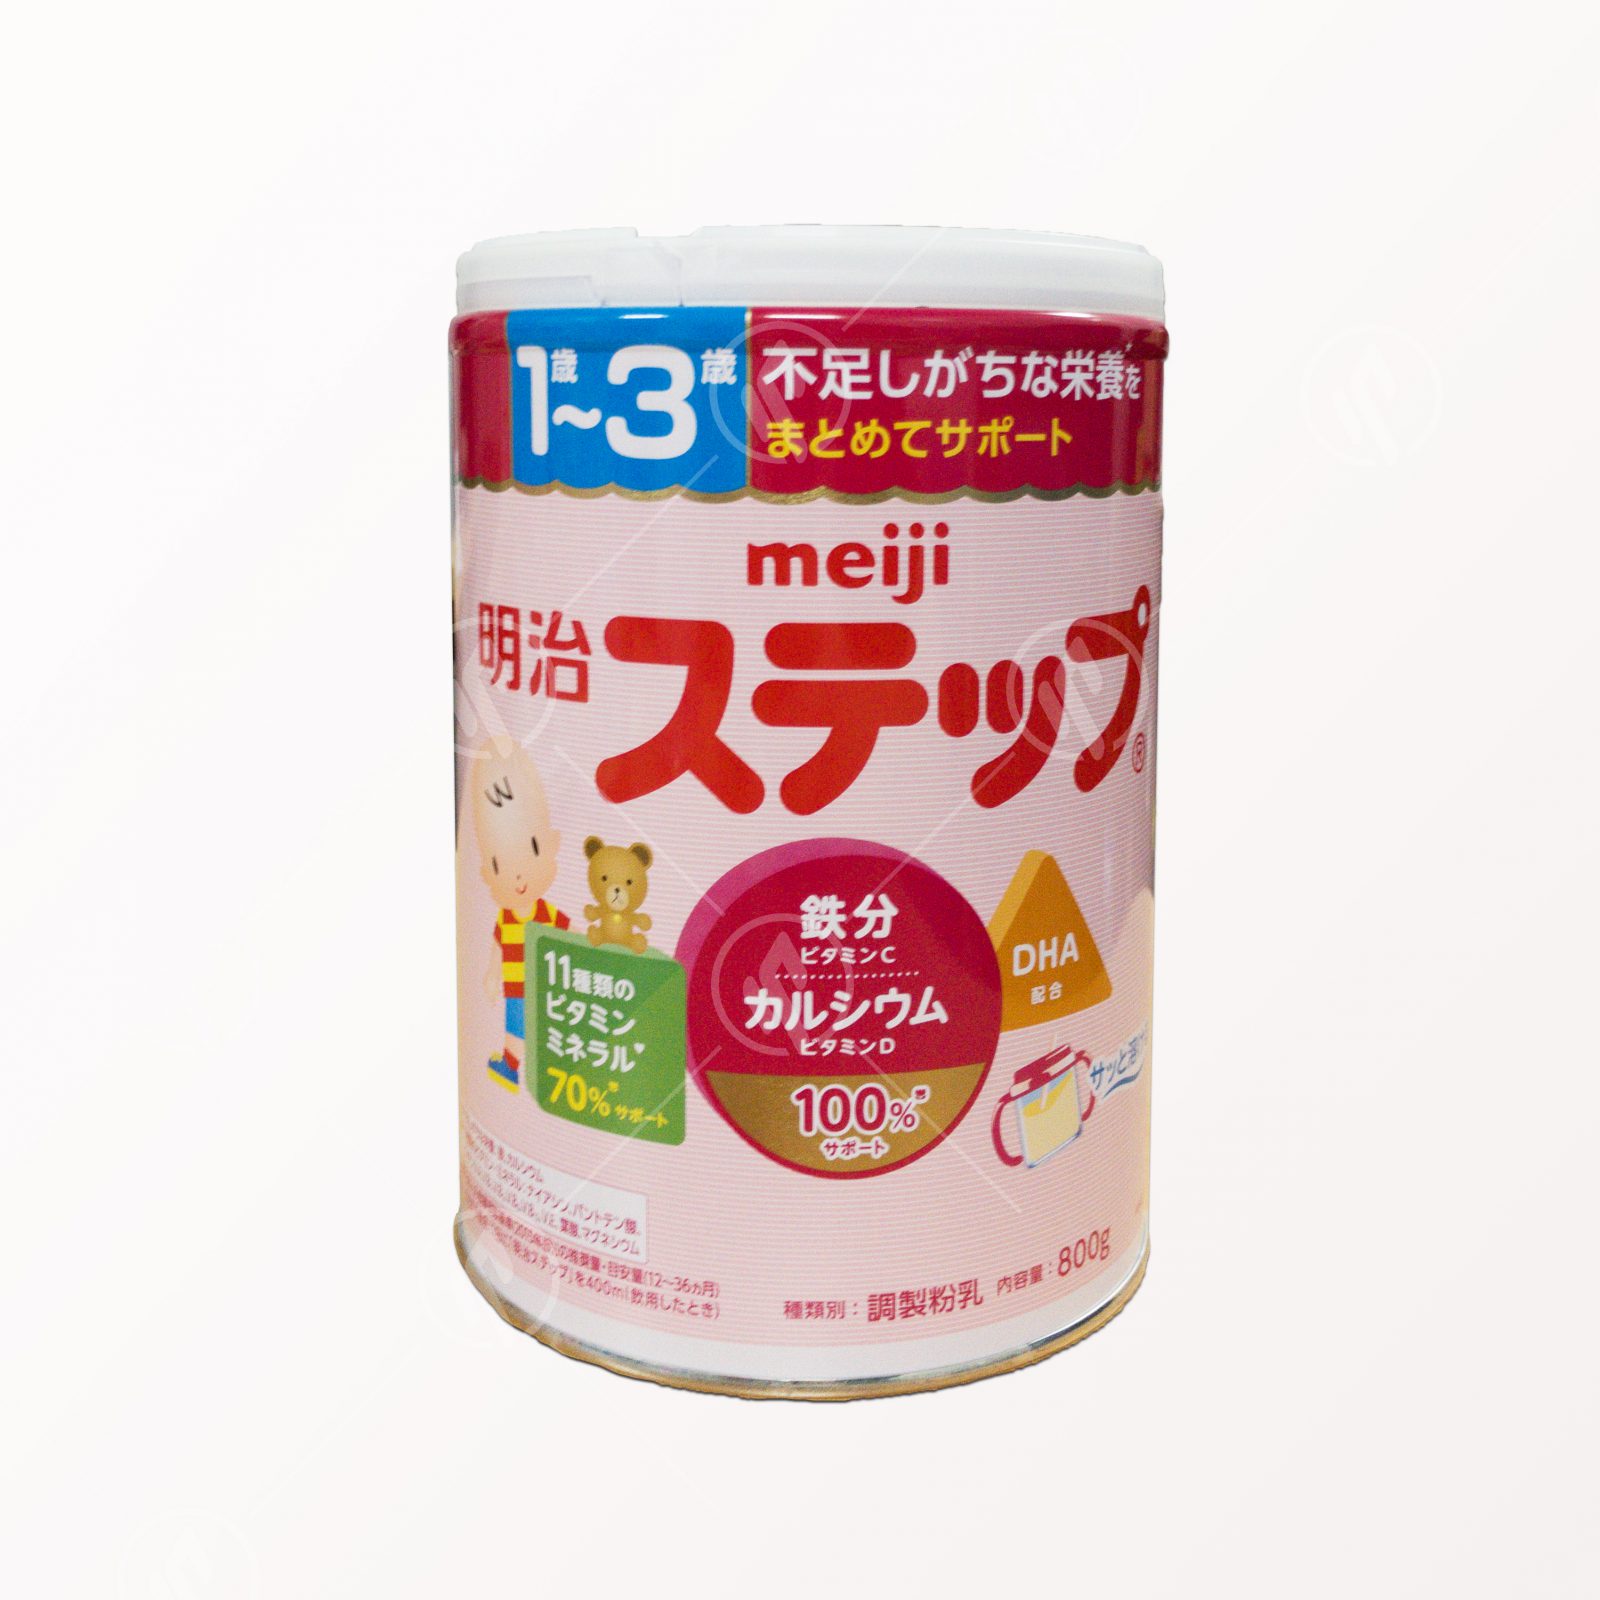 Meiji Step (Dành cho trẻ từ 1 đến 3 tuổi)